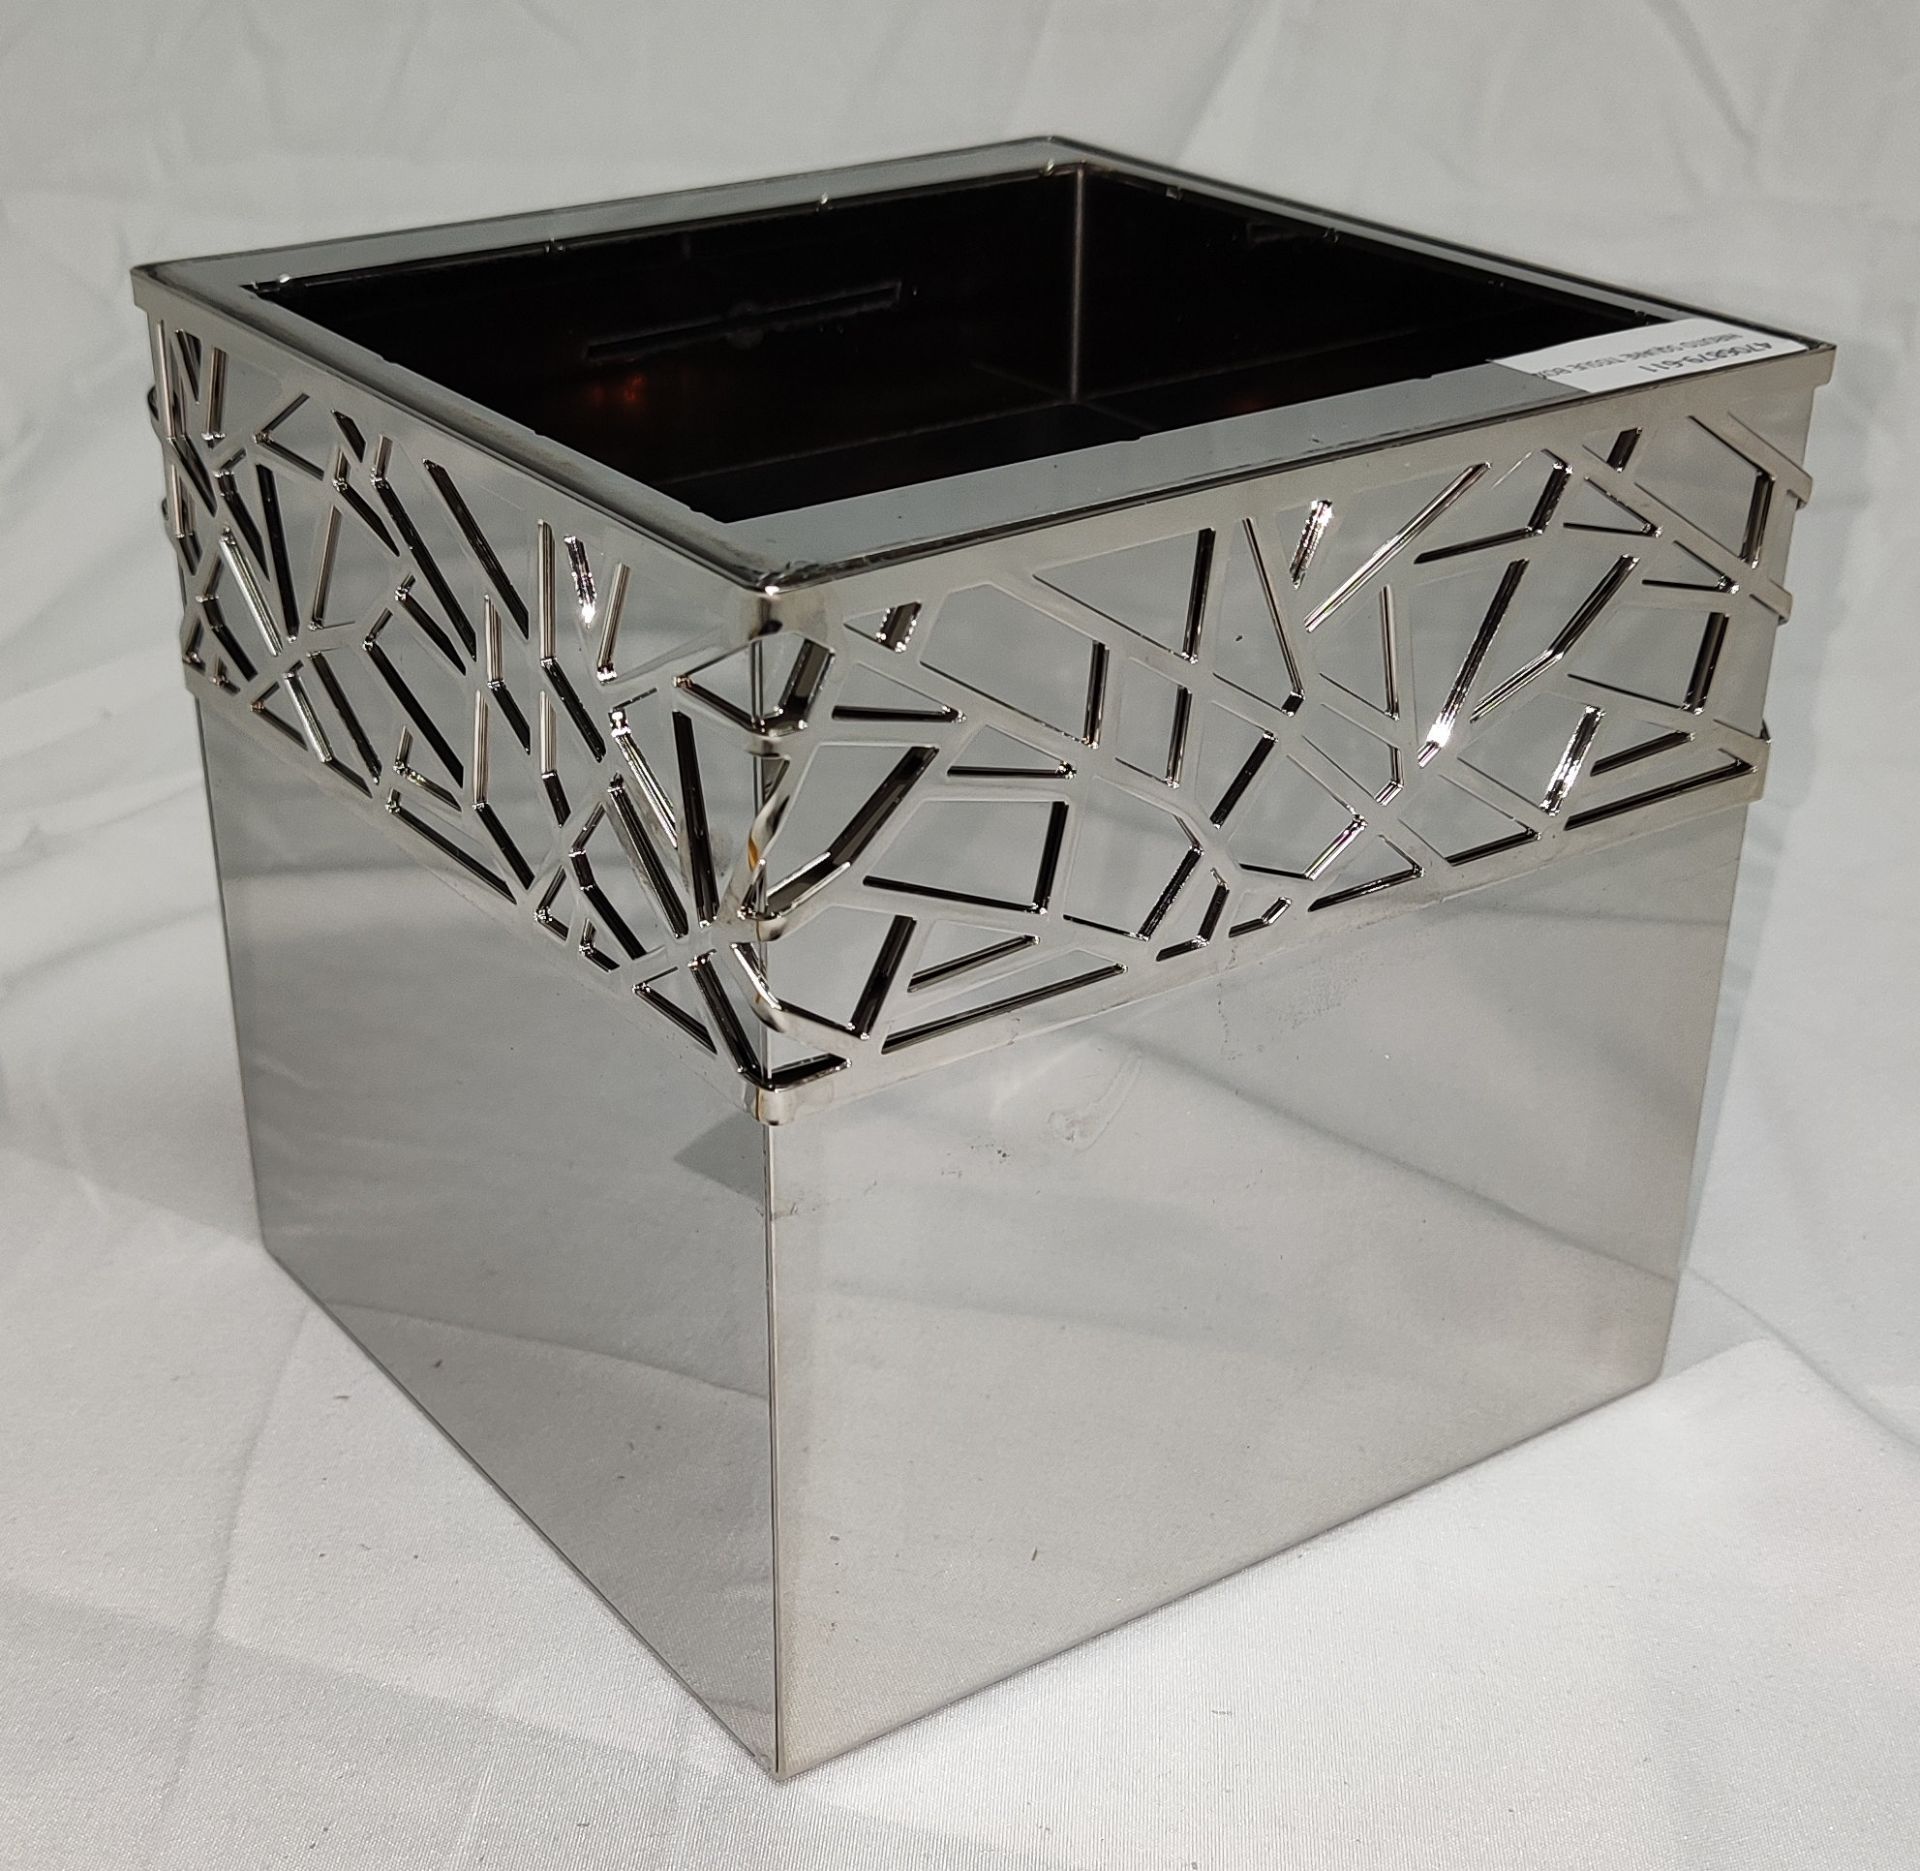 1 x VILLARI Hiroito Square Tissue Box - Chrome Plated - Boxed - Original RRP £529 - Ref: 6125321/ - Image 4 of 17